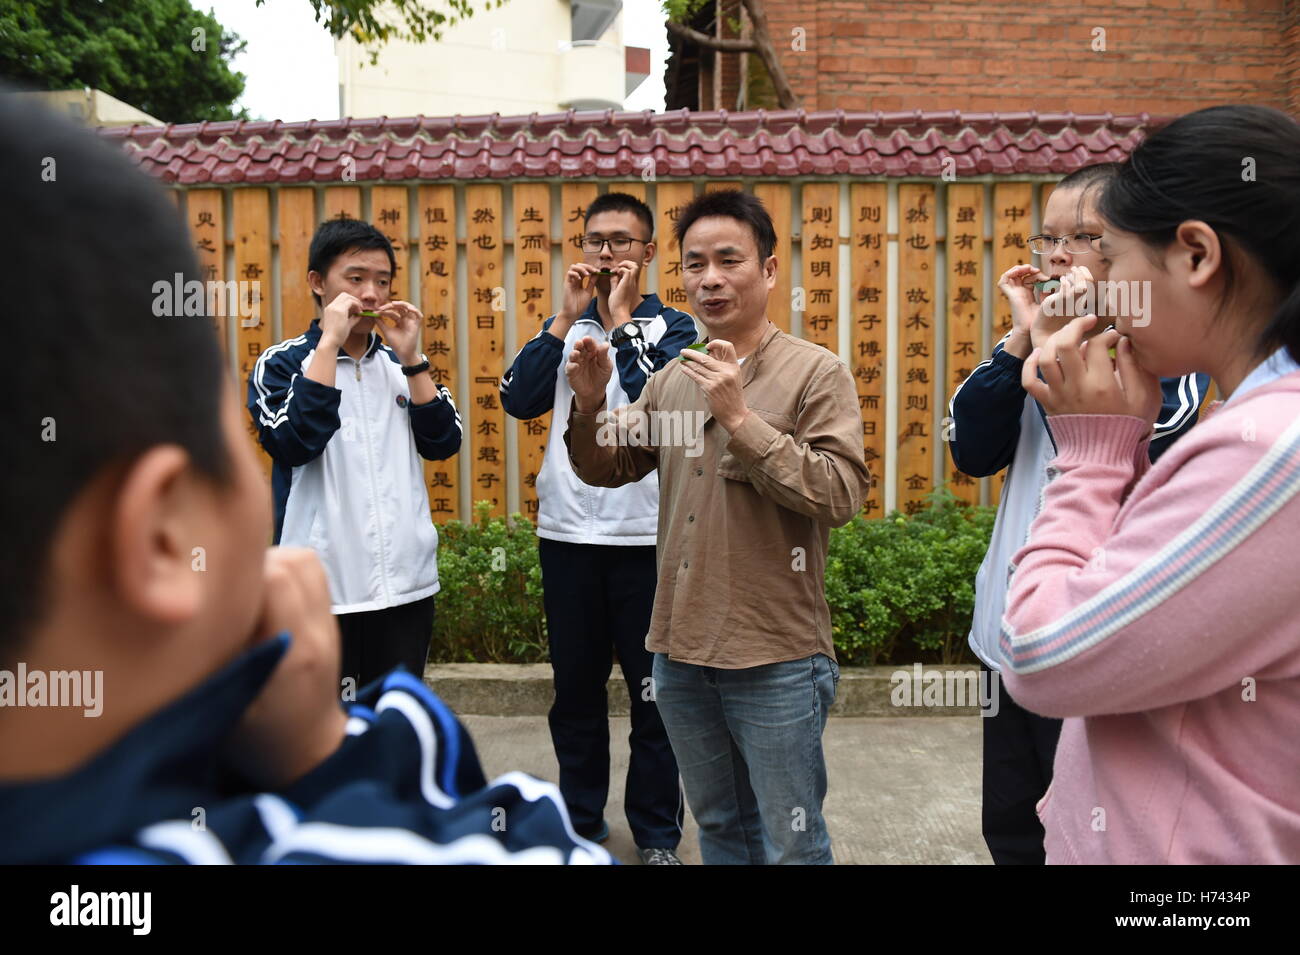 (161103)--FUZHOU, 3. November 2016 (Xinhua)--Qiu Shaochun vermittelt ein Blatt in einer Mittelschule in Fuzhou, Hauptstadt der Südosten Chinas Provinz Fujian, 2. November 2016 zu blasen. Setzen ein frisches Blatt auf den Lippen, bläst Qiu Shaochun eine Melodie nach der anderen, verzaubert das Publikum mit rhythmischen Vitalität und zarten Ausdruck. "Blätter der älteste, einfachste und bequemste Musikinstrument können" sagte Qiu, 51, der bekannteste Blatt weht Musiker in China. "Ich habe bisher in mehr als 30 Ländern durchgeführt." Qiu als Kind früher gerne hören blinde Fischer das Blatt Schlag und Stockfoto